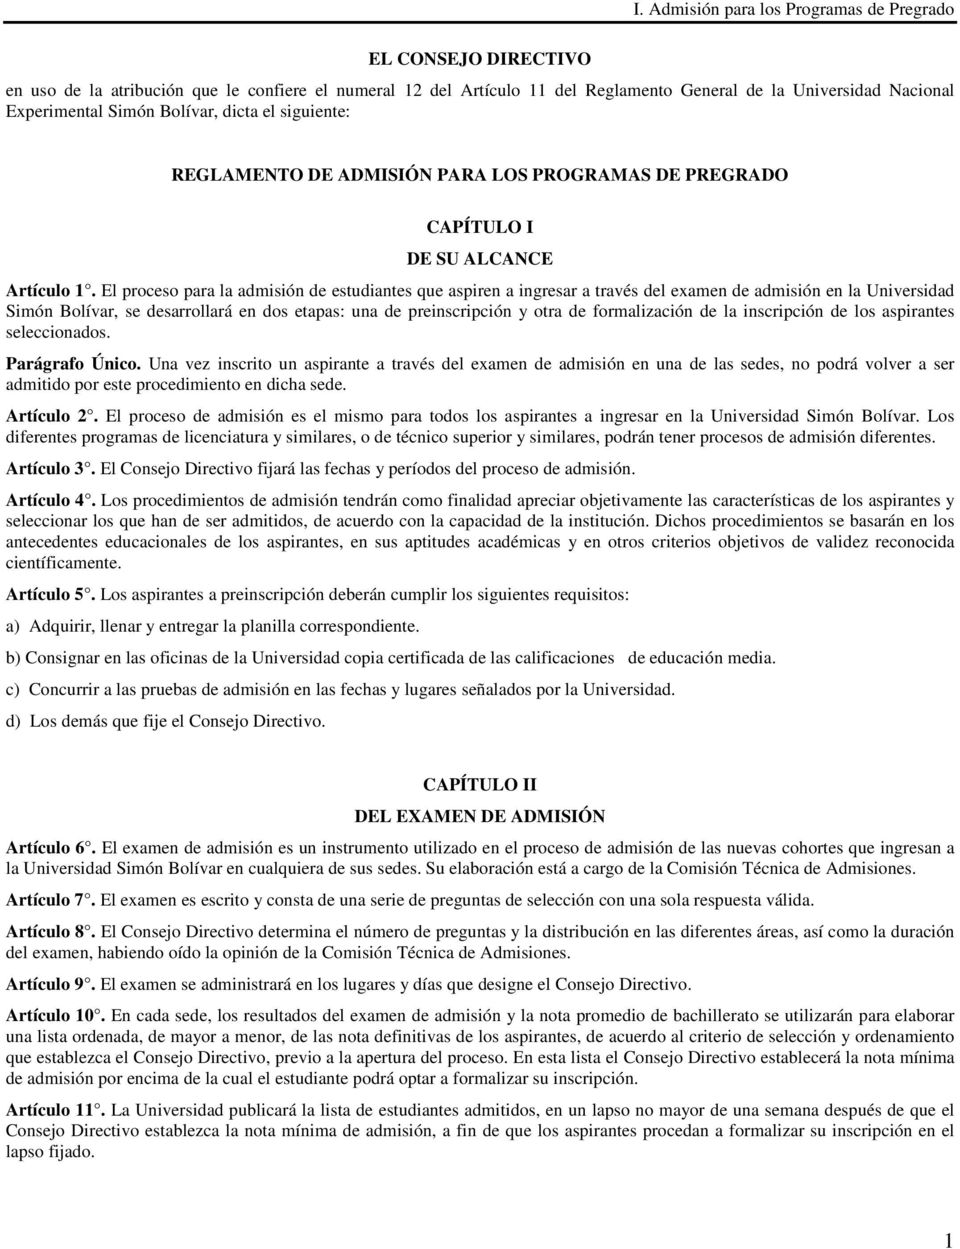 El proceso para la admisión de estudiantes que aspiren a ingresar a través del examen de admisión en la Universidad Simón Bolívar, se desarrollará en dos etapas: una de preinscripción y otra de